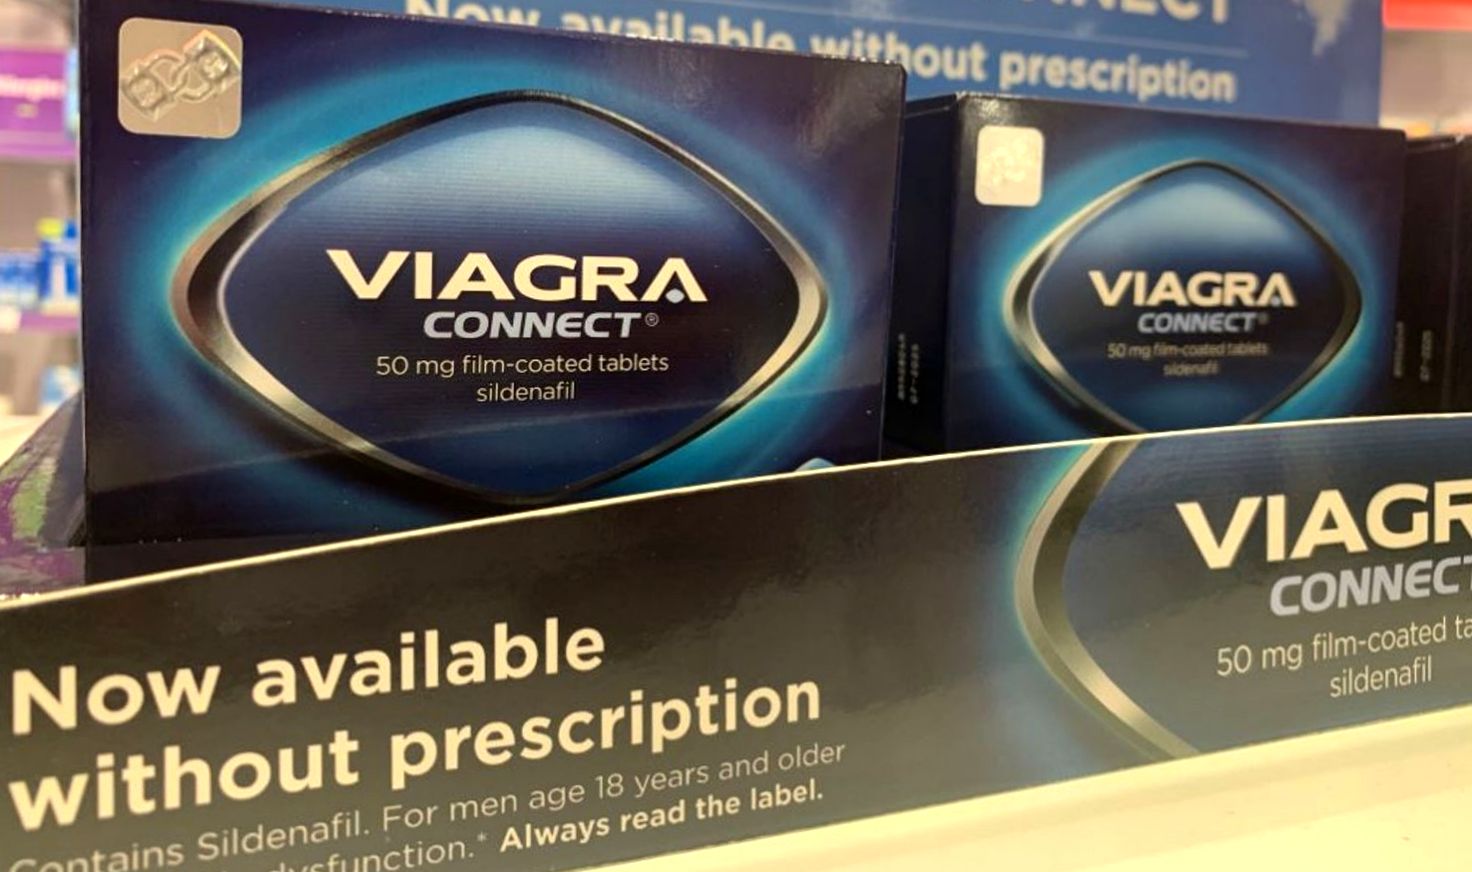 Viagra over the counter